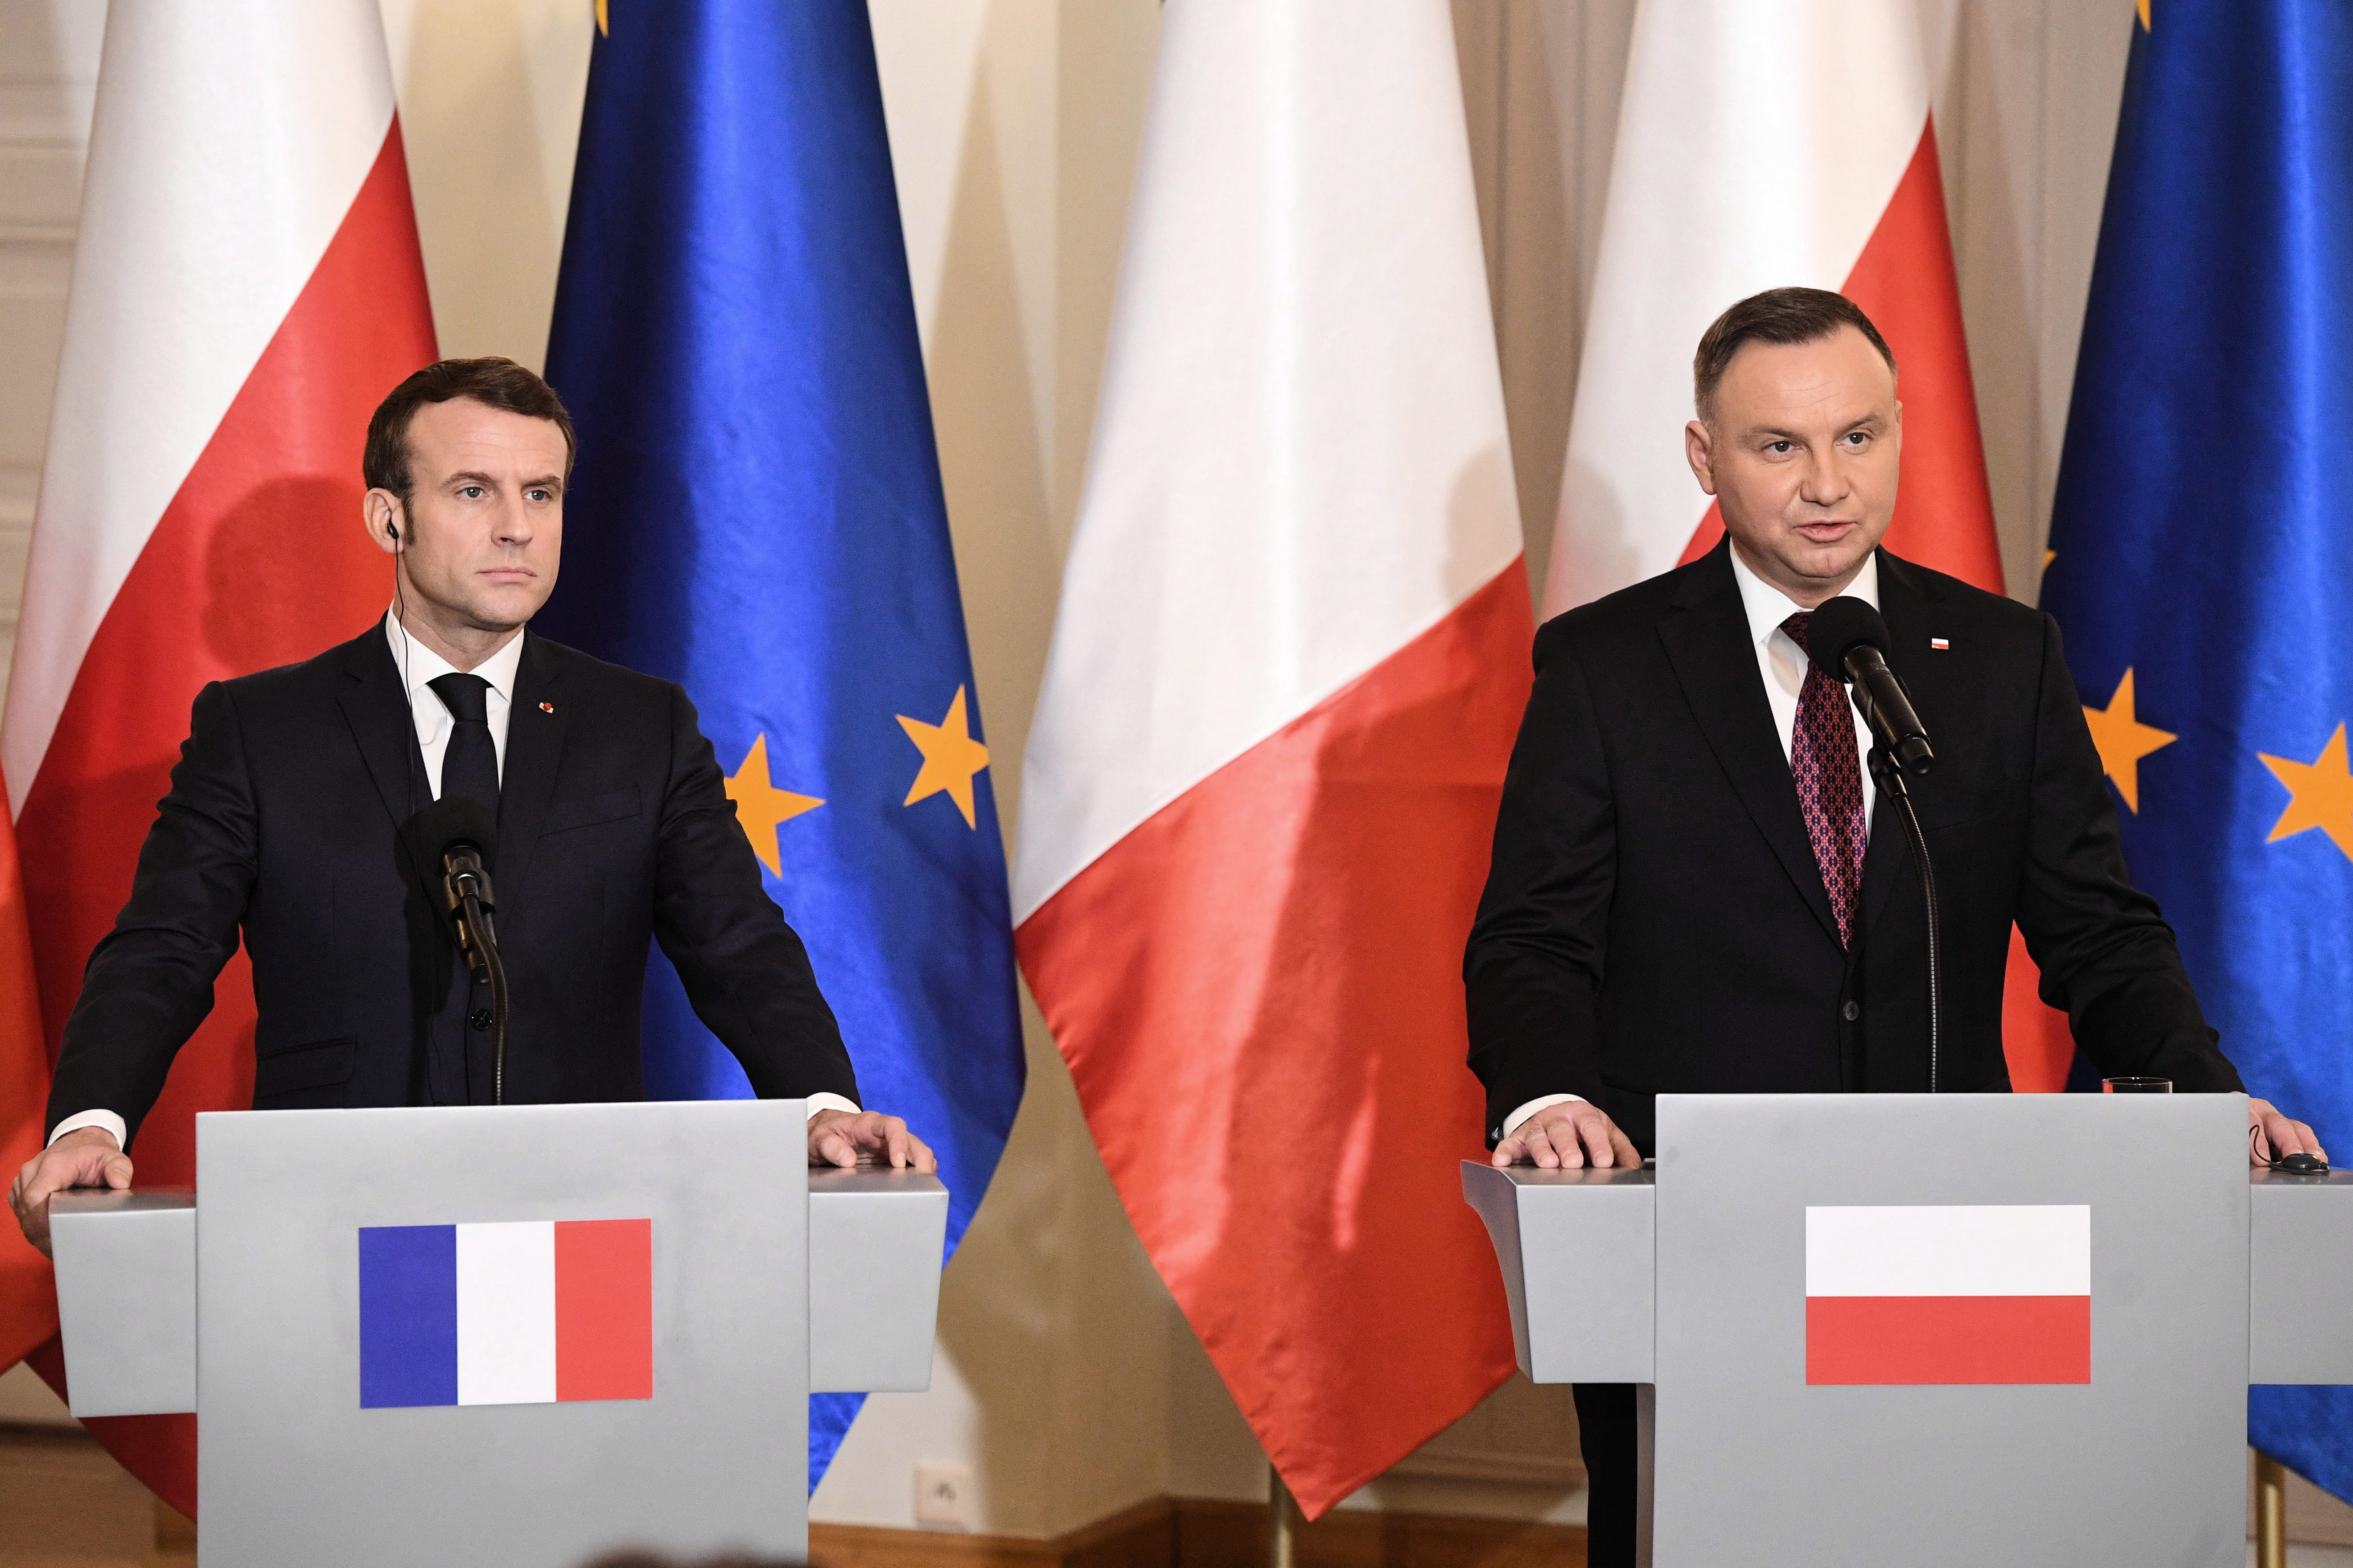 Andrzej Duda és Emmanuel Macron: a Brexit után új kihívások előtt áll az EU  - Blikk